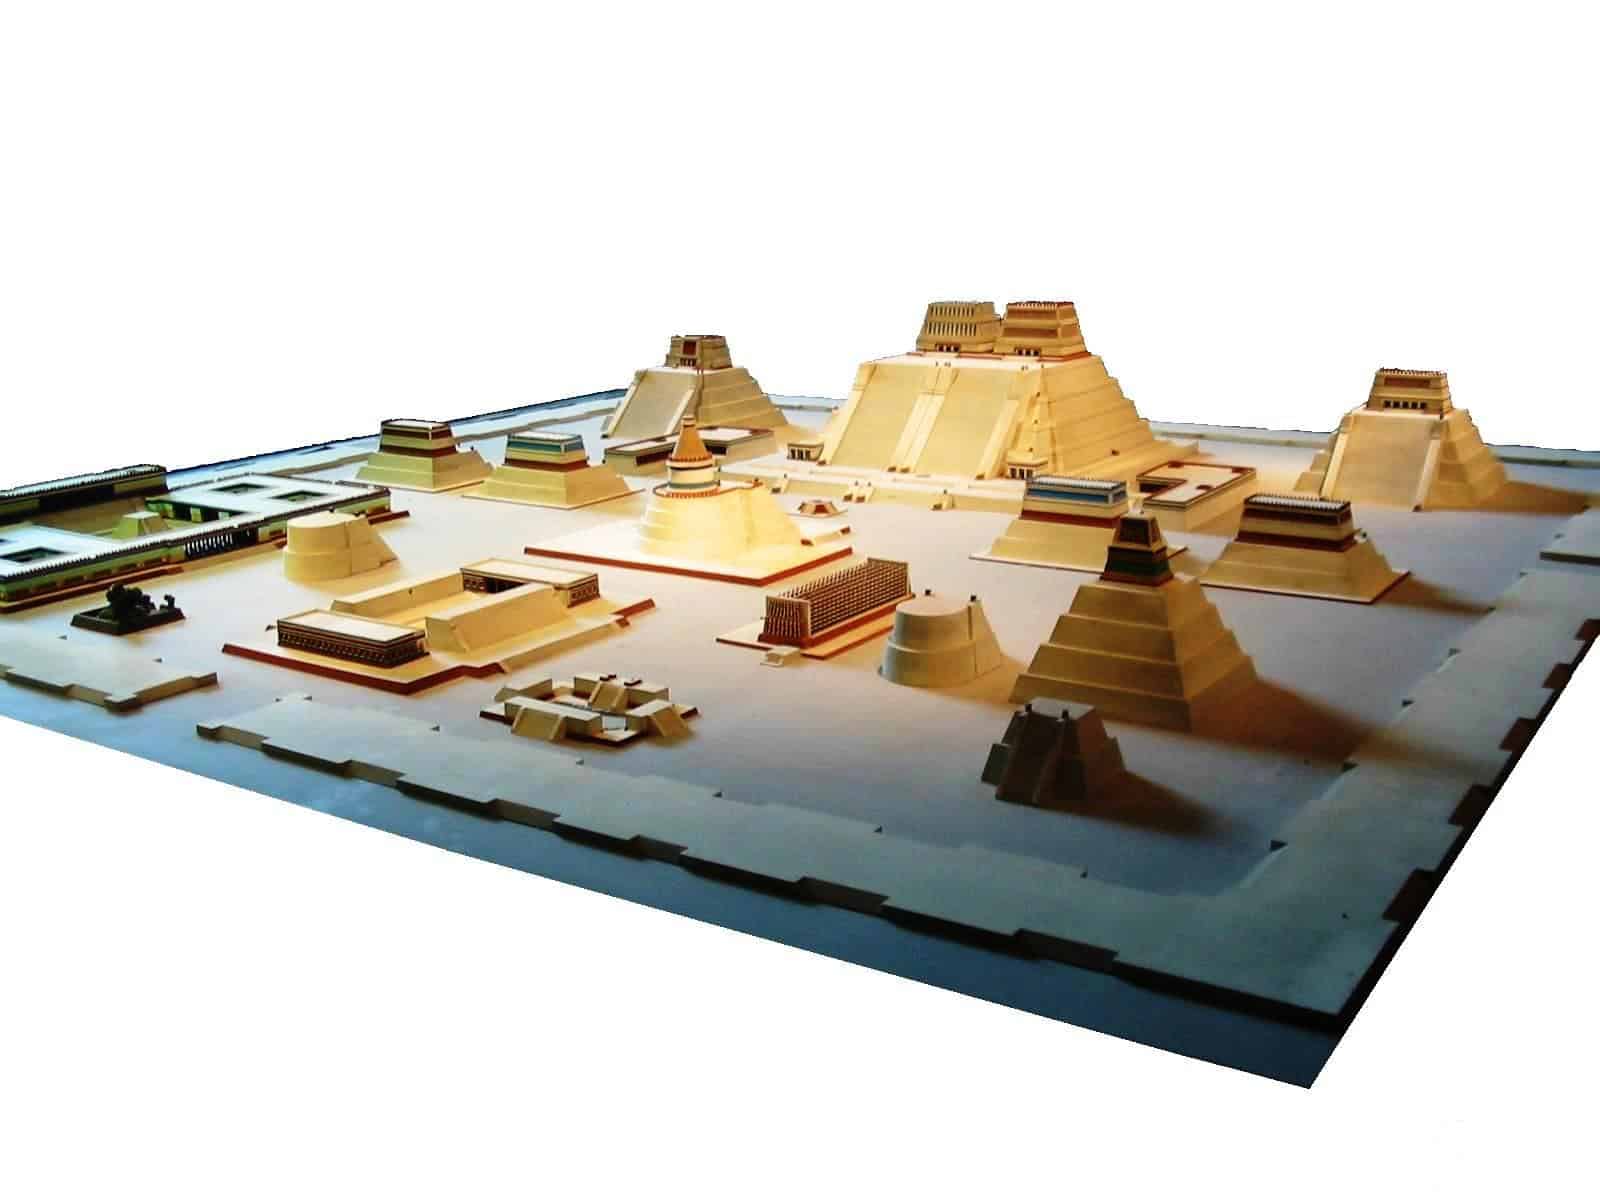 A model of Tenochtitlan, Aztec capital